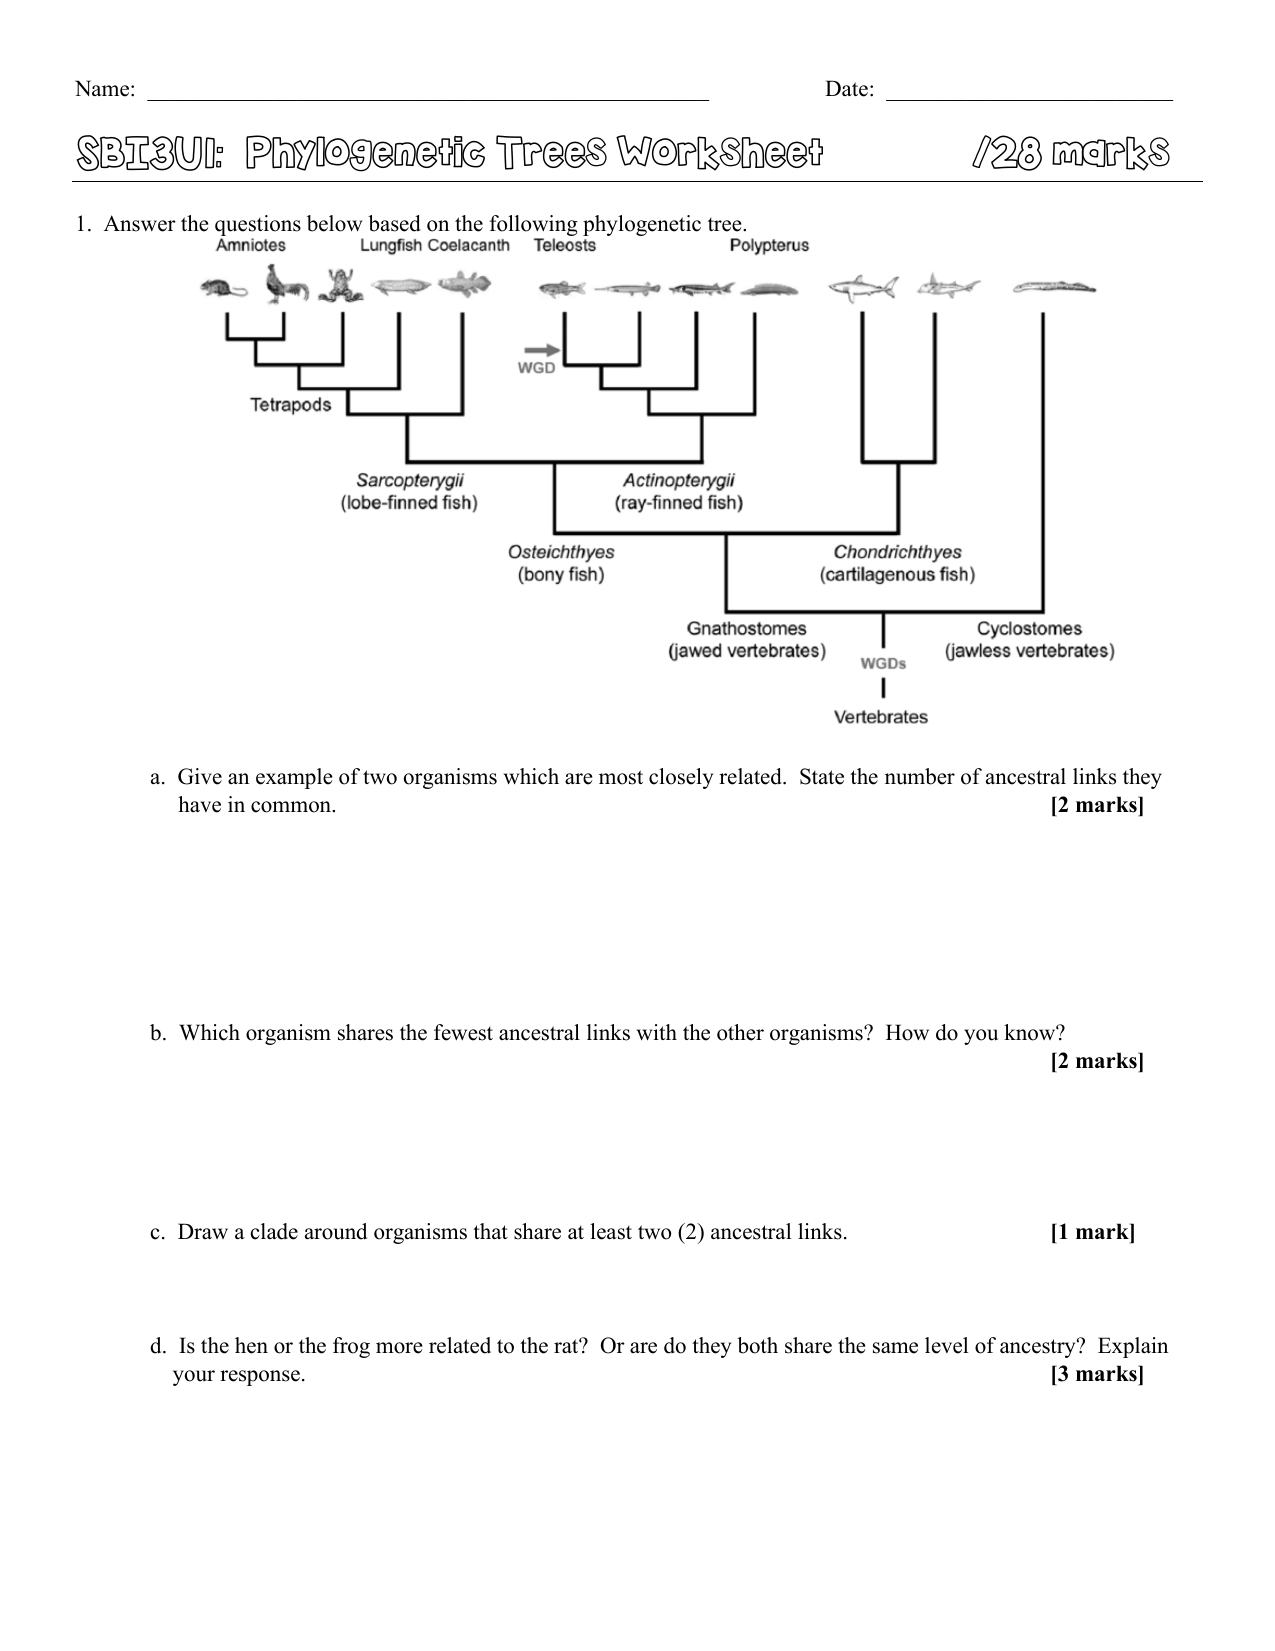 sbi3u1-phylogenetic-tree-ws